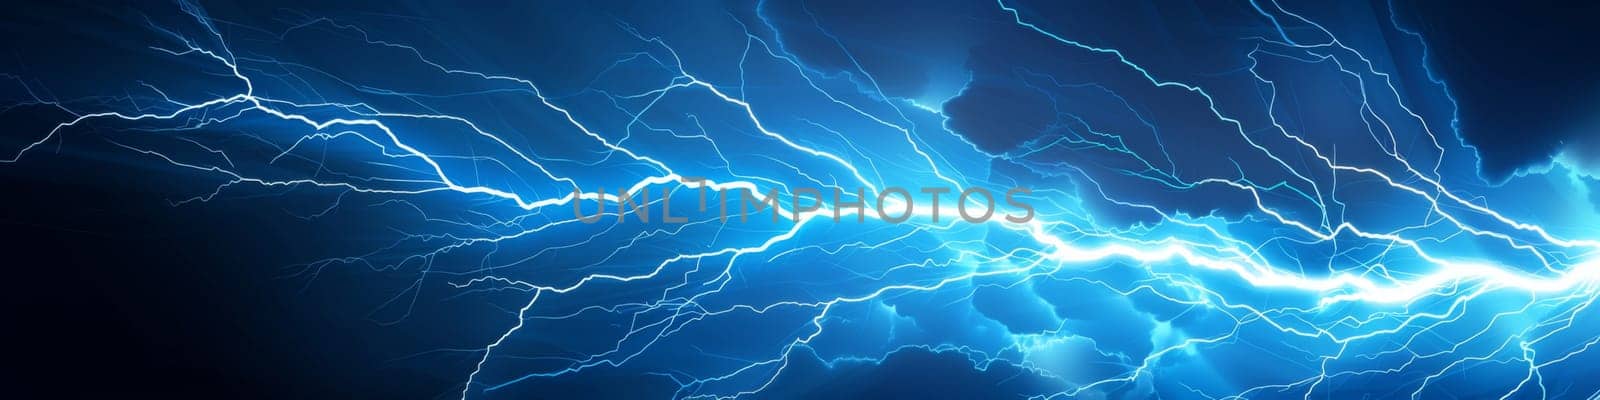 Thunder lighting isolated on dark blue background by Kadula